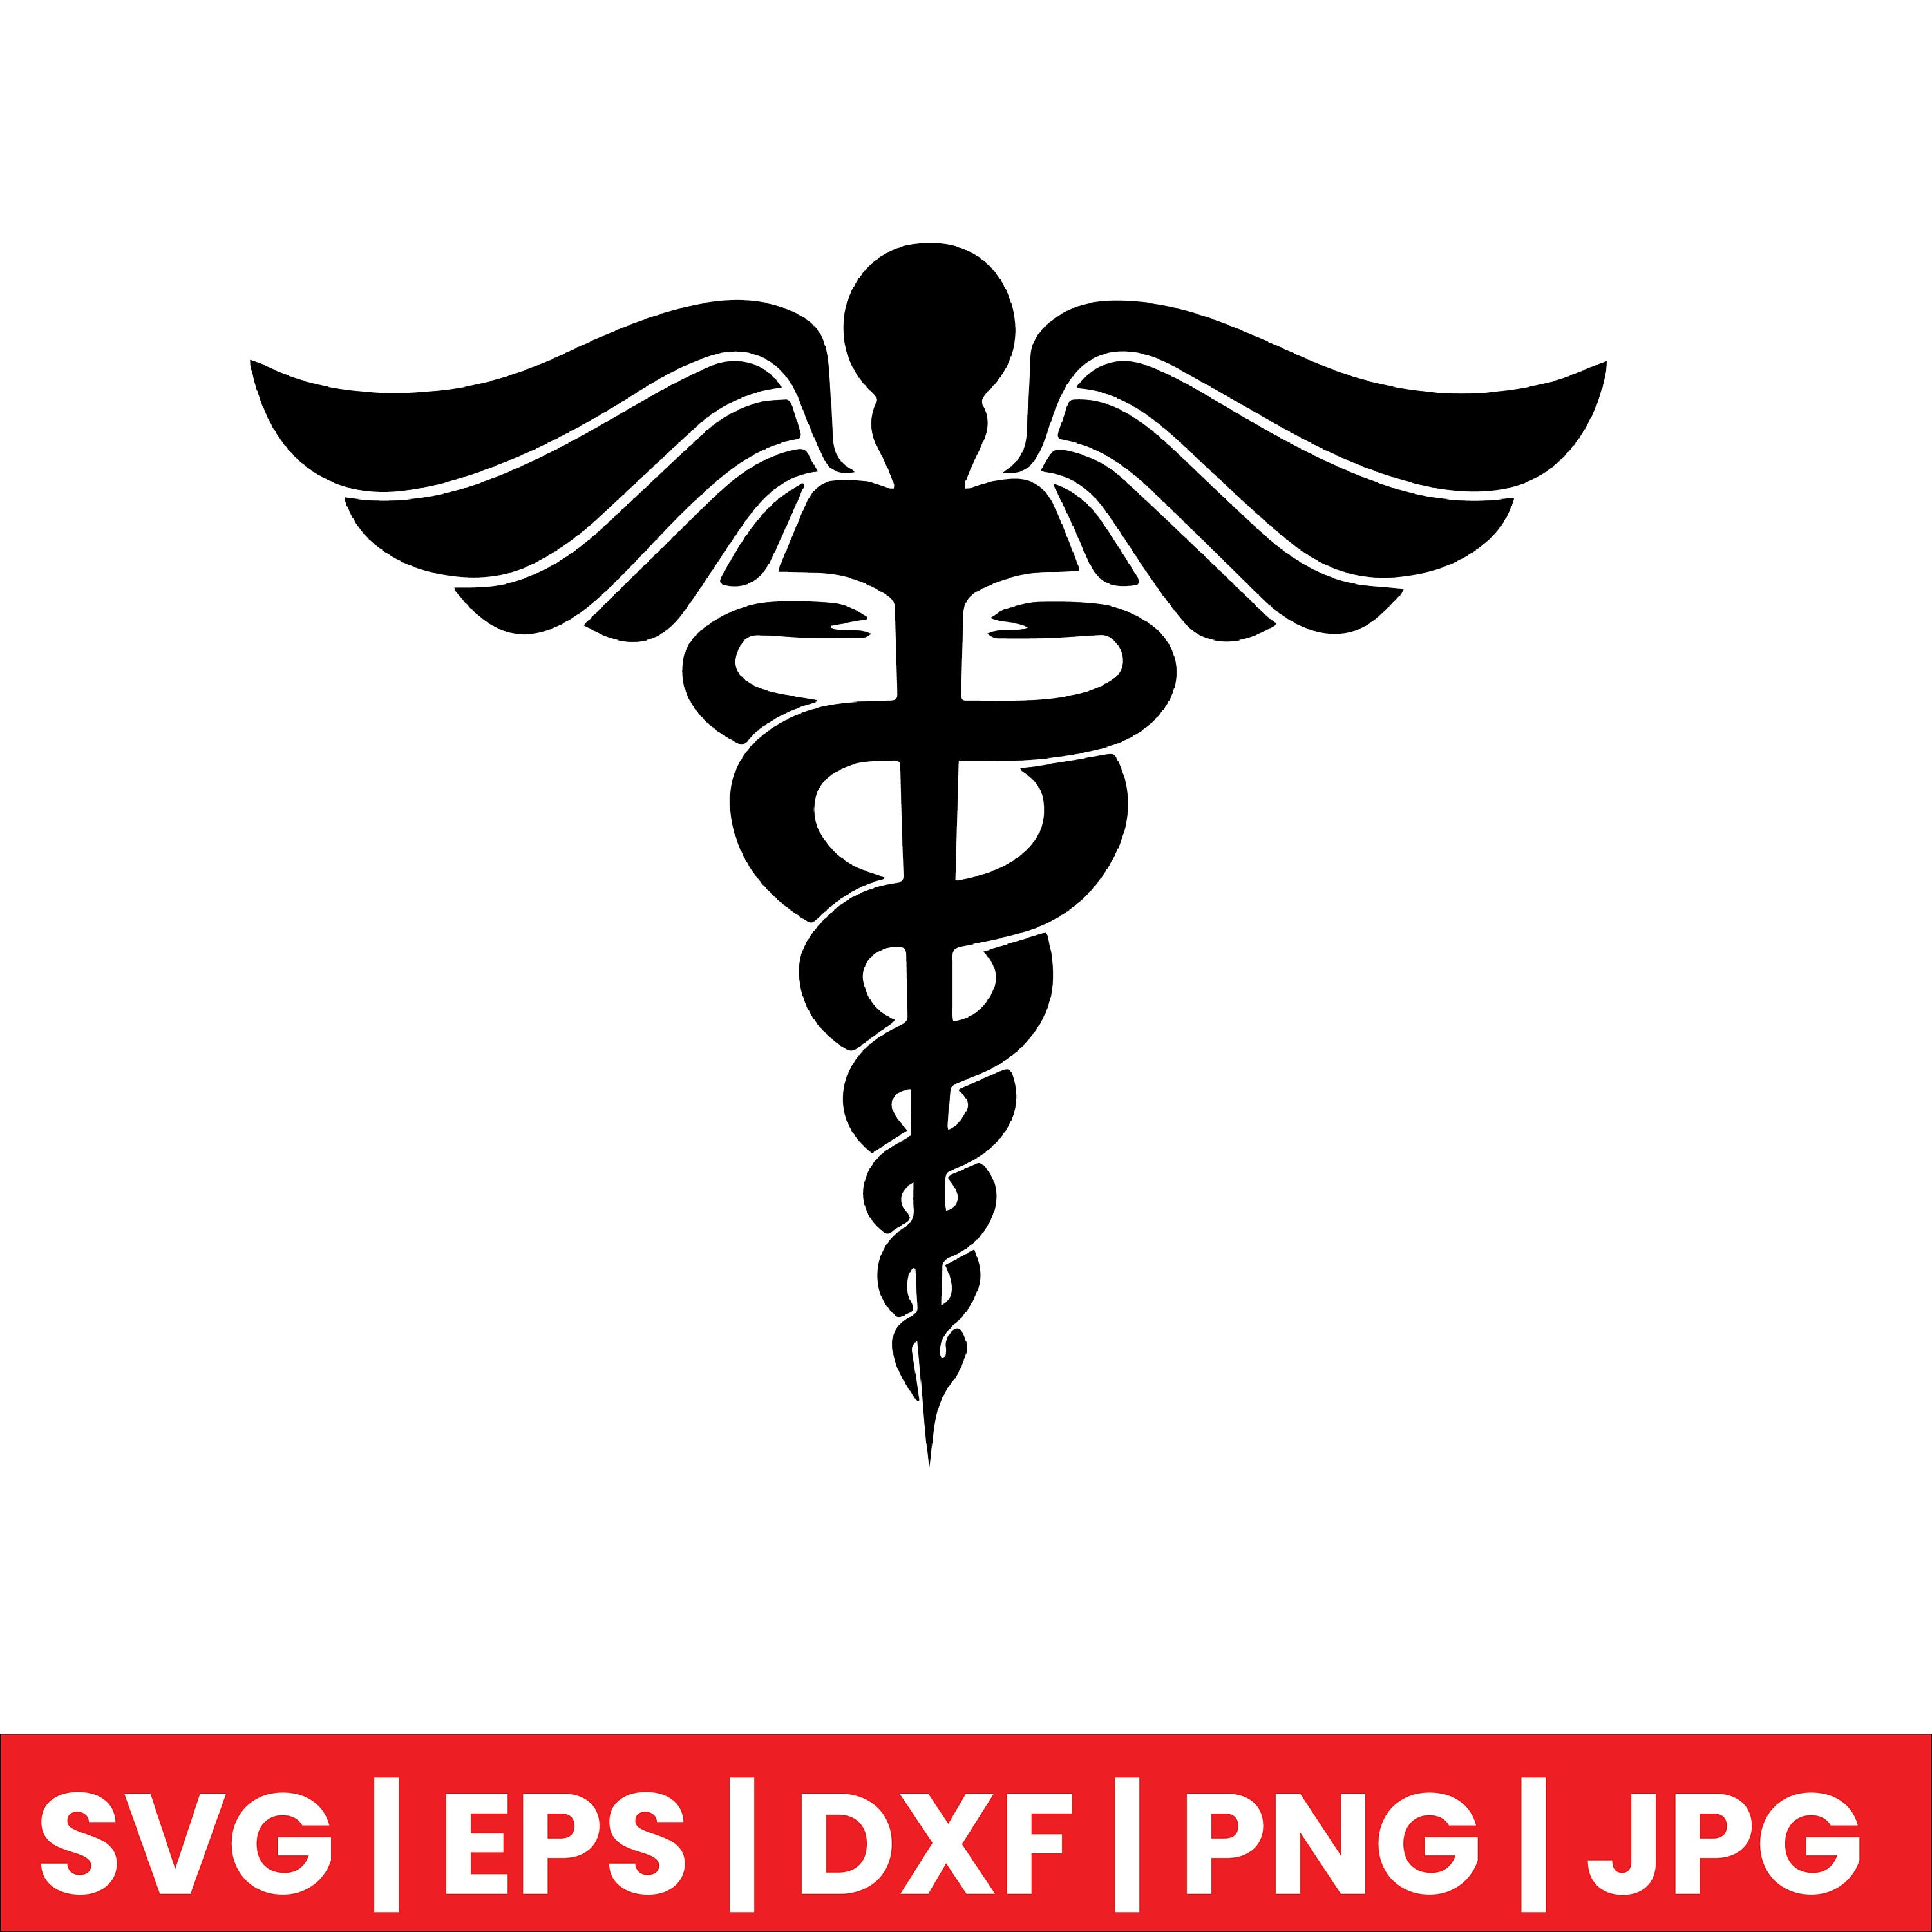 Nurse Hat Svg, Nurse Hat Cut File, Red Cross Svg, Medical Sign Svg,  Hospital Svg, Doctor Svg, Medical Student Svg, Silhouette, Stencil.